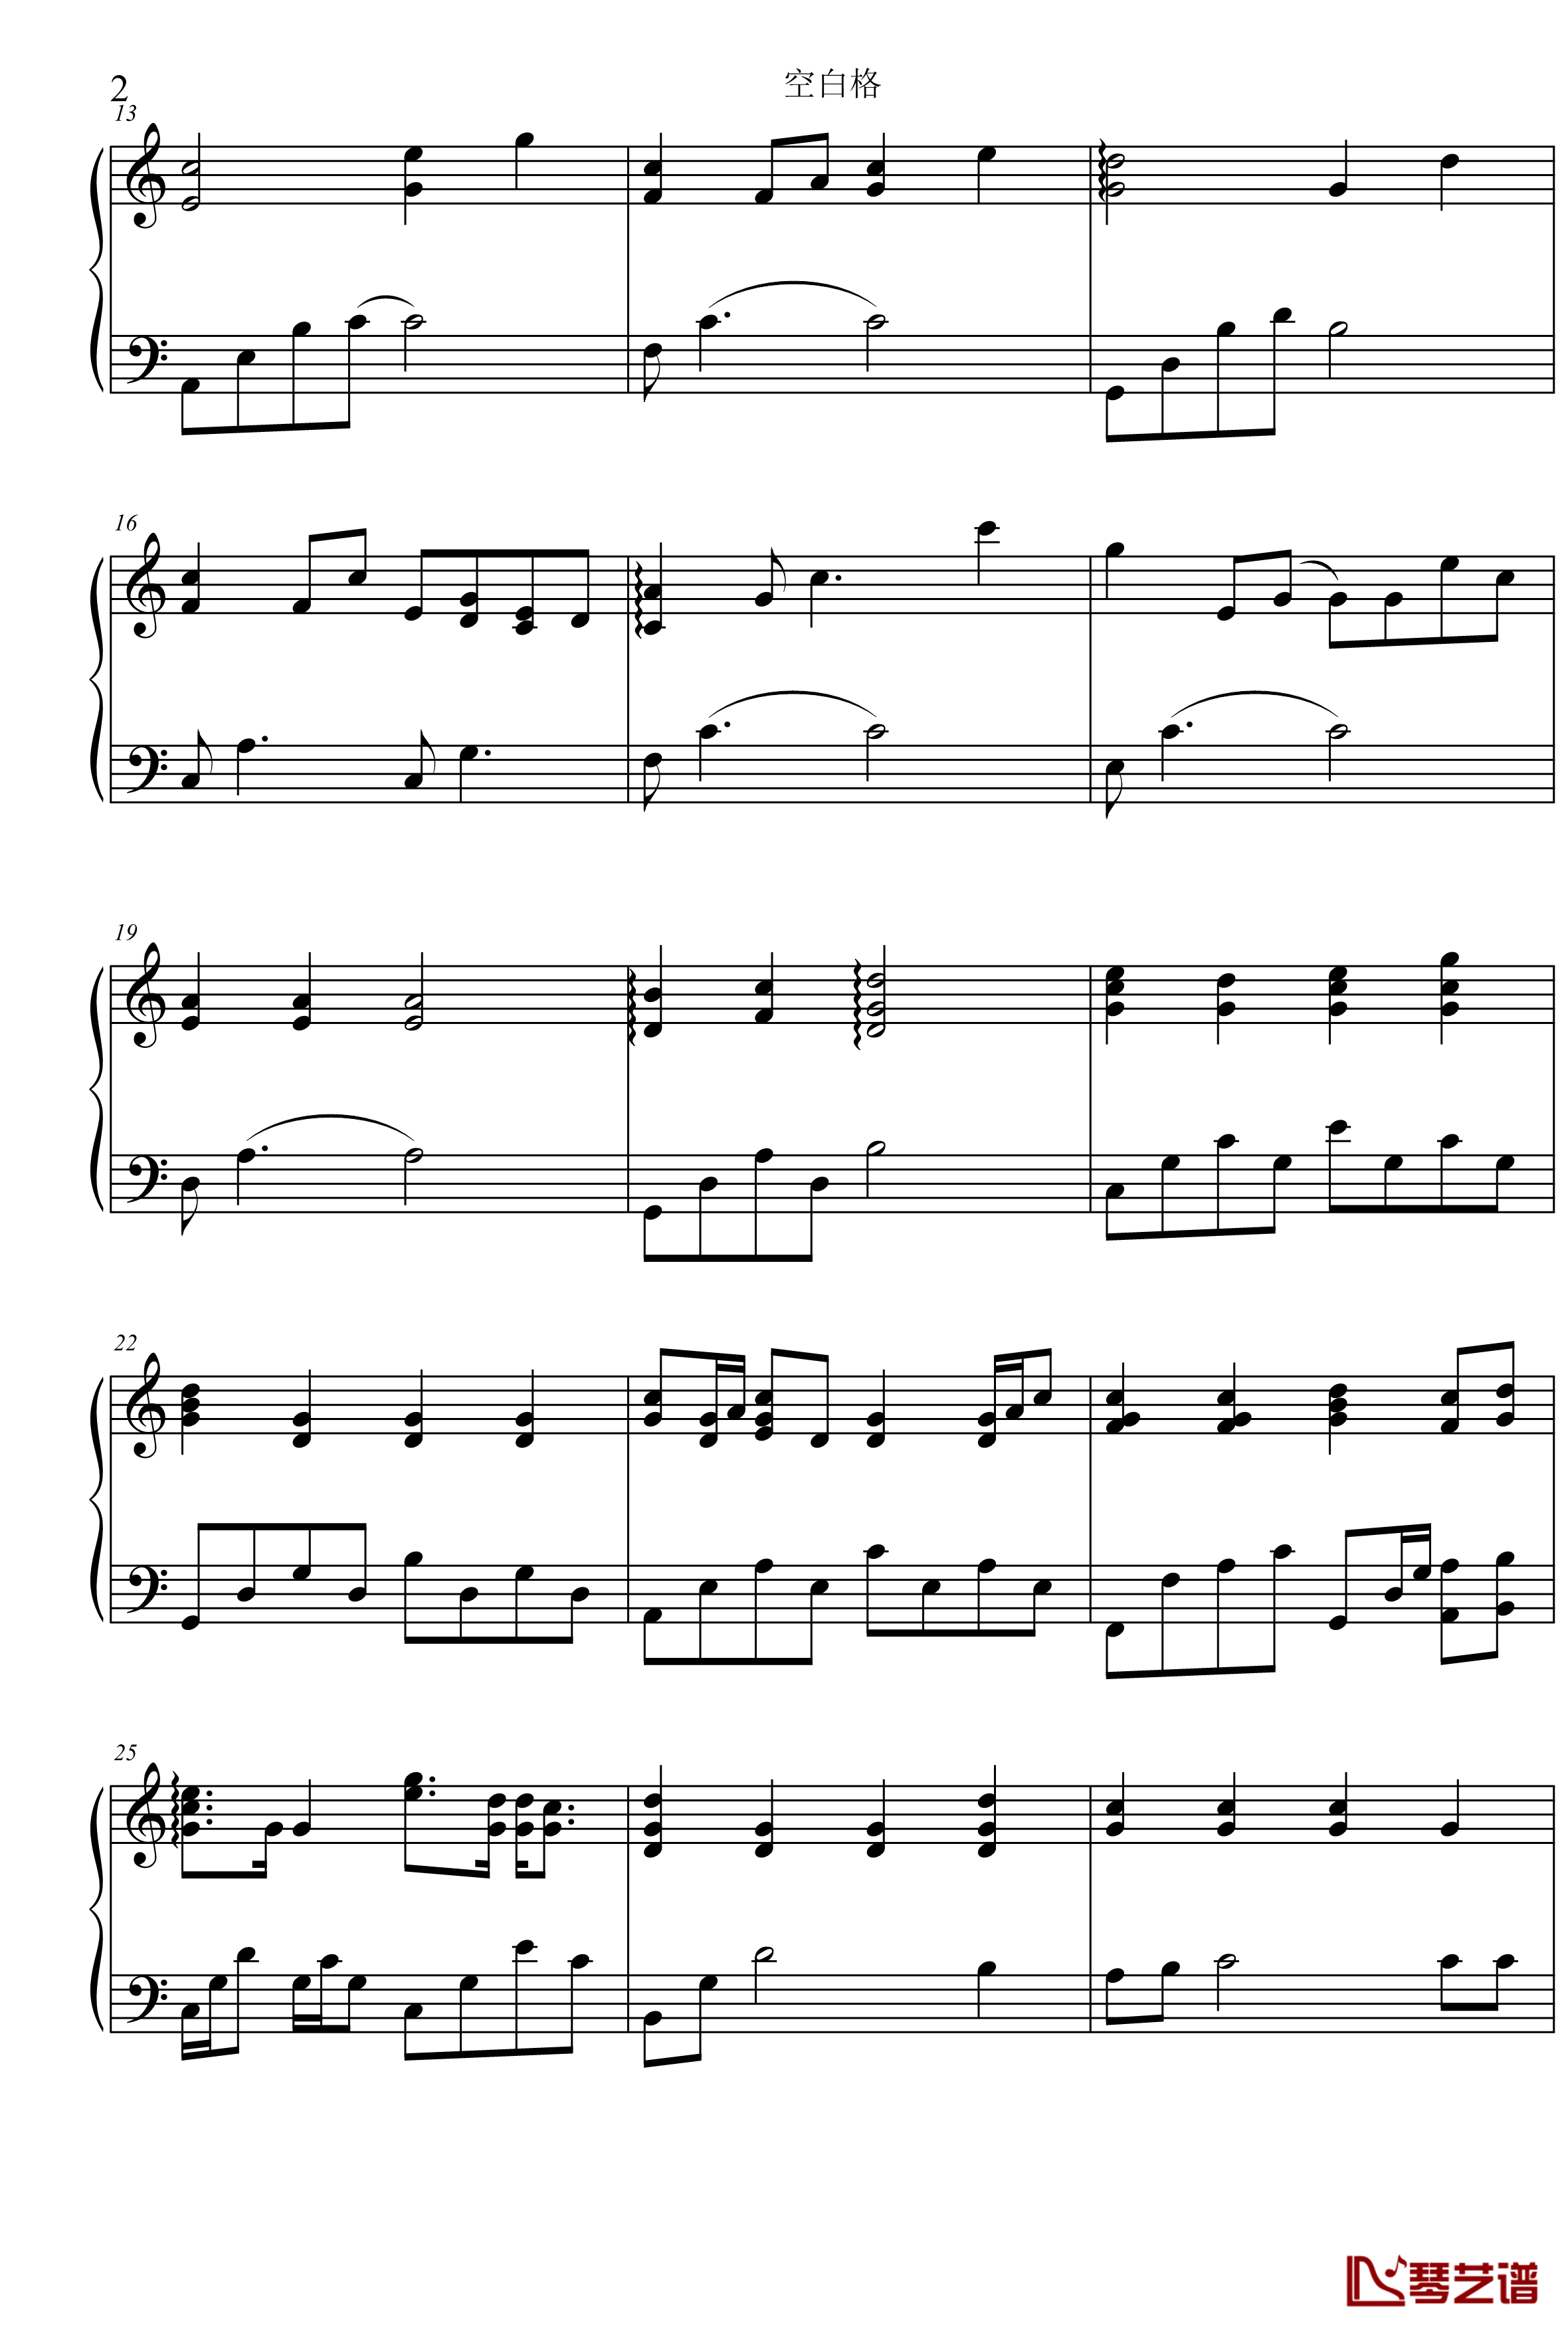 空白格钢琴谱-C调版本-蔡健雅